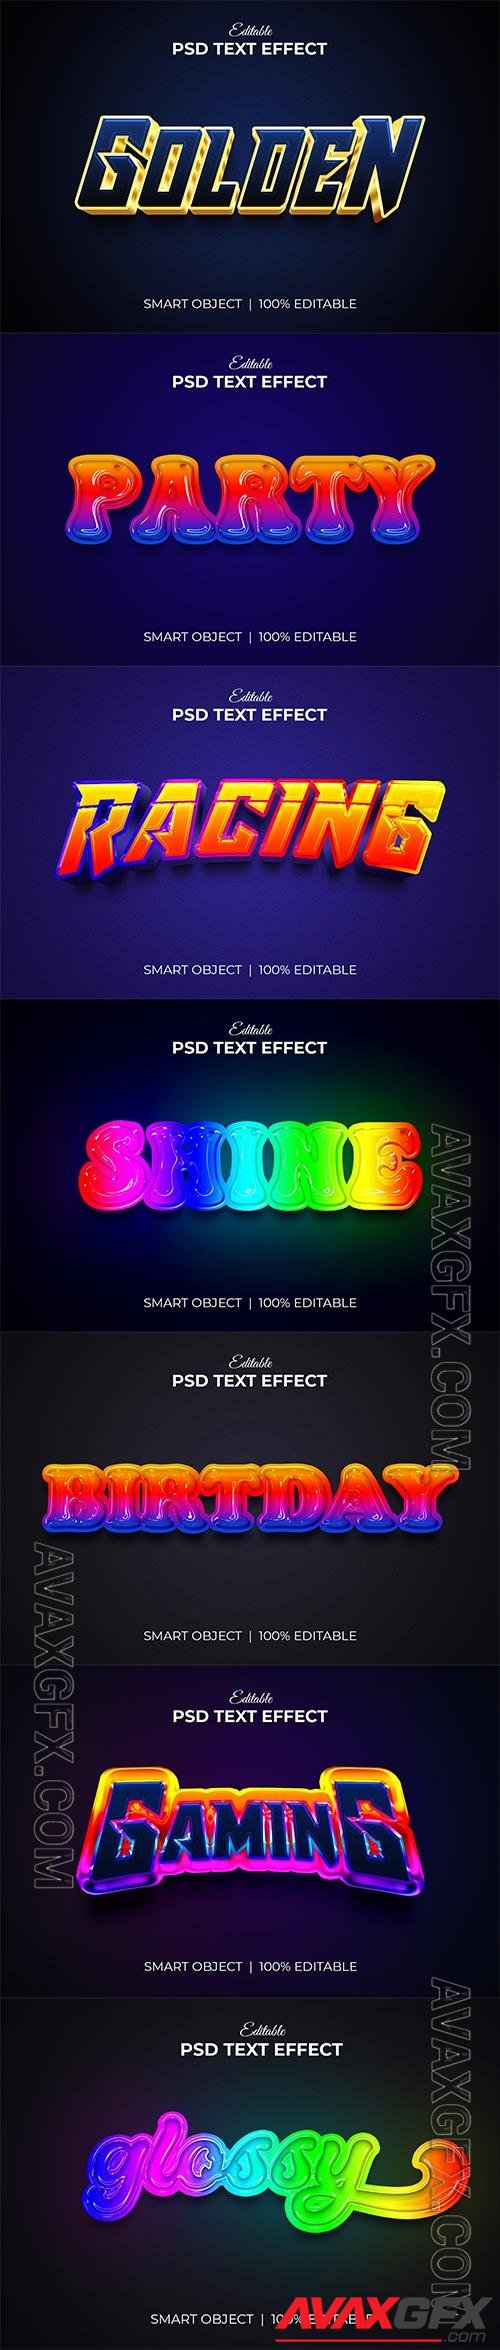 Psd text effect set vol 69